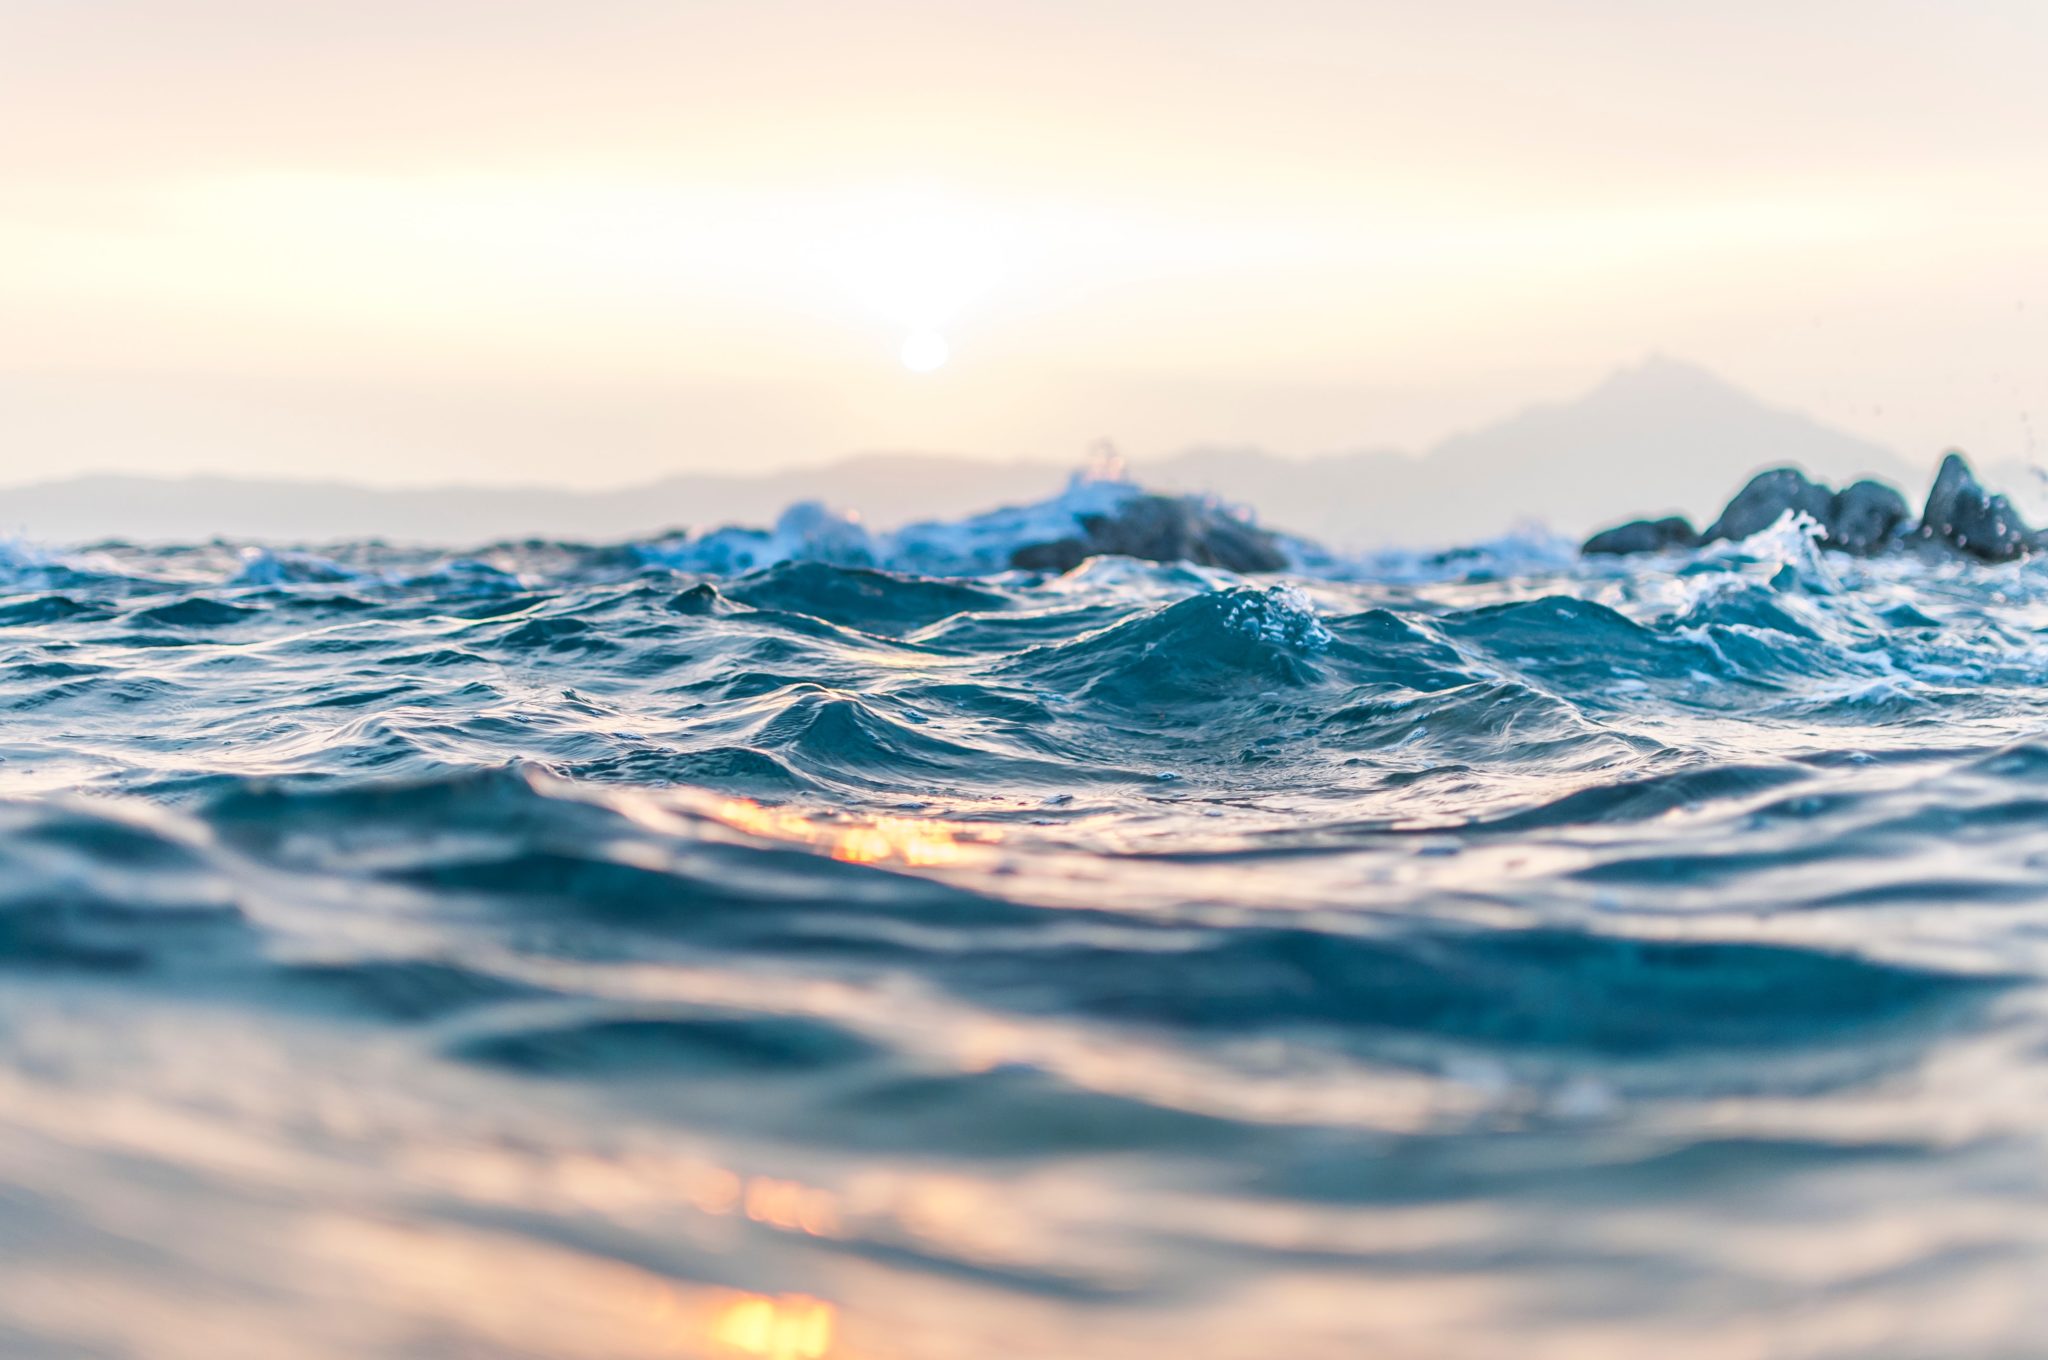 Man blickt direkt an der Meeresoberfläche entlang, die Sonne scheint auf das Wasser und es gibt leichte Wellen